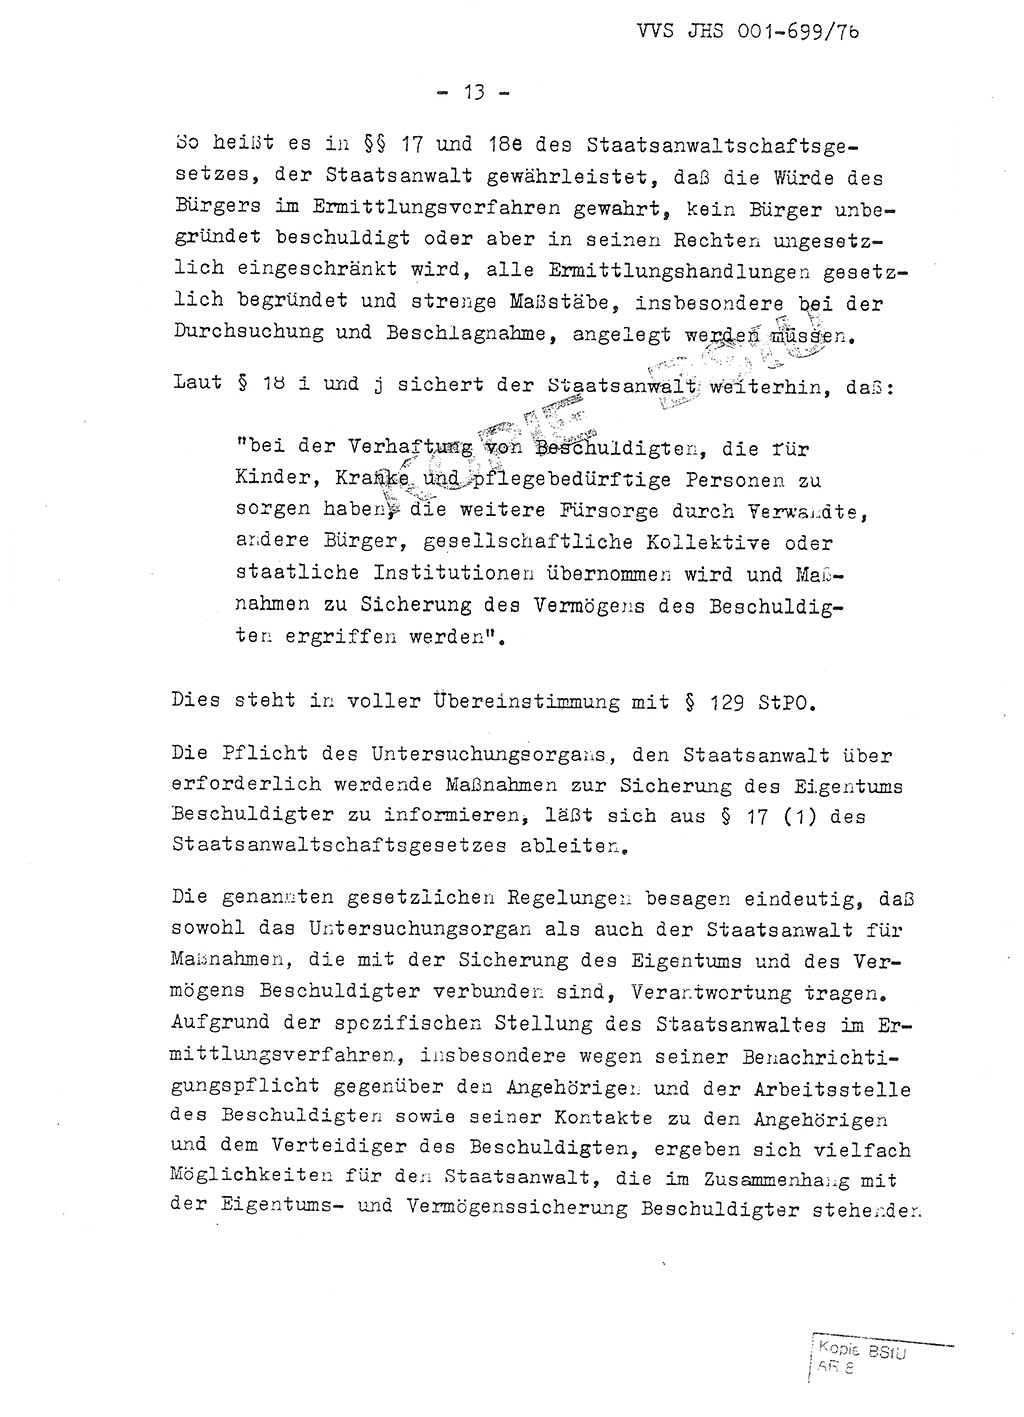 Fachschulabschlußarbeit Leutnant Volkmar Taubert (HA Ⅸ/9), Leutnant Axel Naumann (HA Ⅸ/9), Unterleutnat Detlef Debski (HA Ⅸ/9), Ministerium für Staatssicherheit (MfS) [Deutsche Demokratische Republik (DDR)], Juristische Hochschule (JHS), Vertrauliche Verschlußsache (VVS) 001-699/76, Potsdam 1976, Seite 13 (FS-Abschl.-Arb. MfS DDR JHS VVS 001-699/76 1976, S. 13)